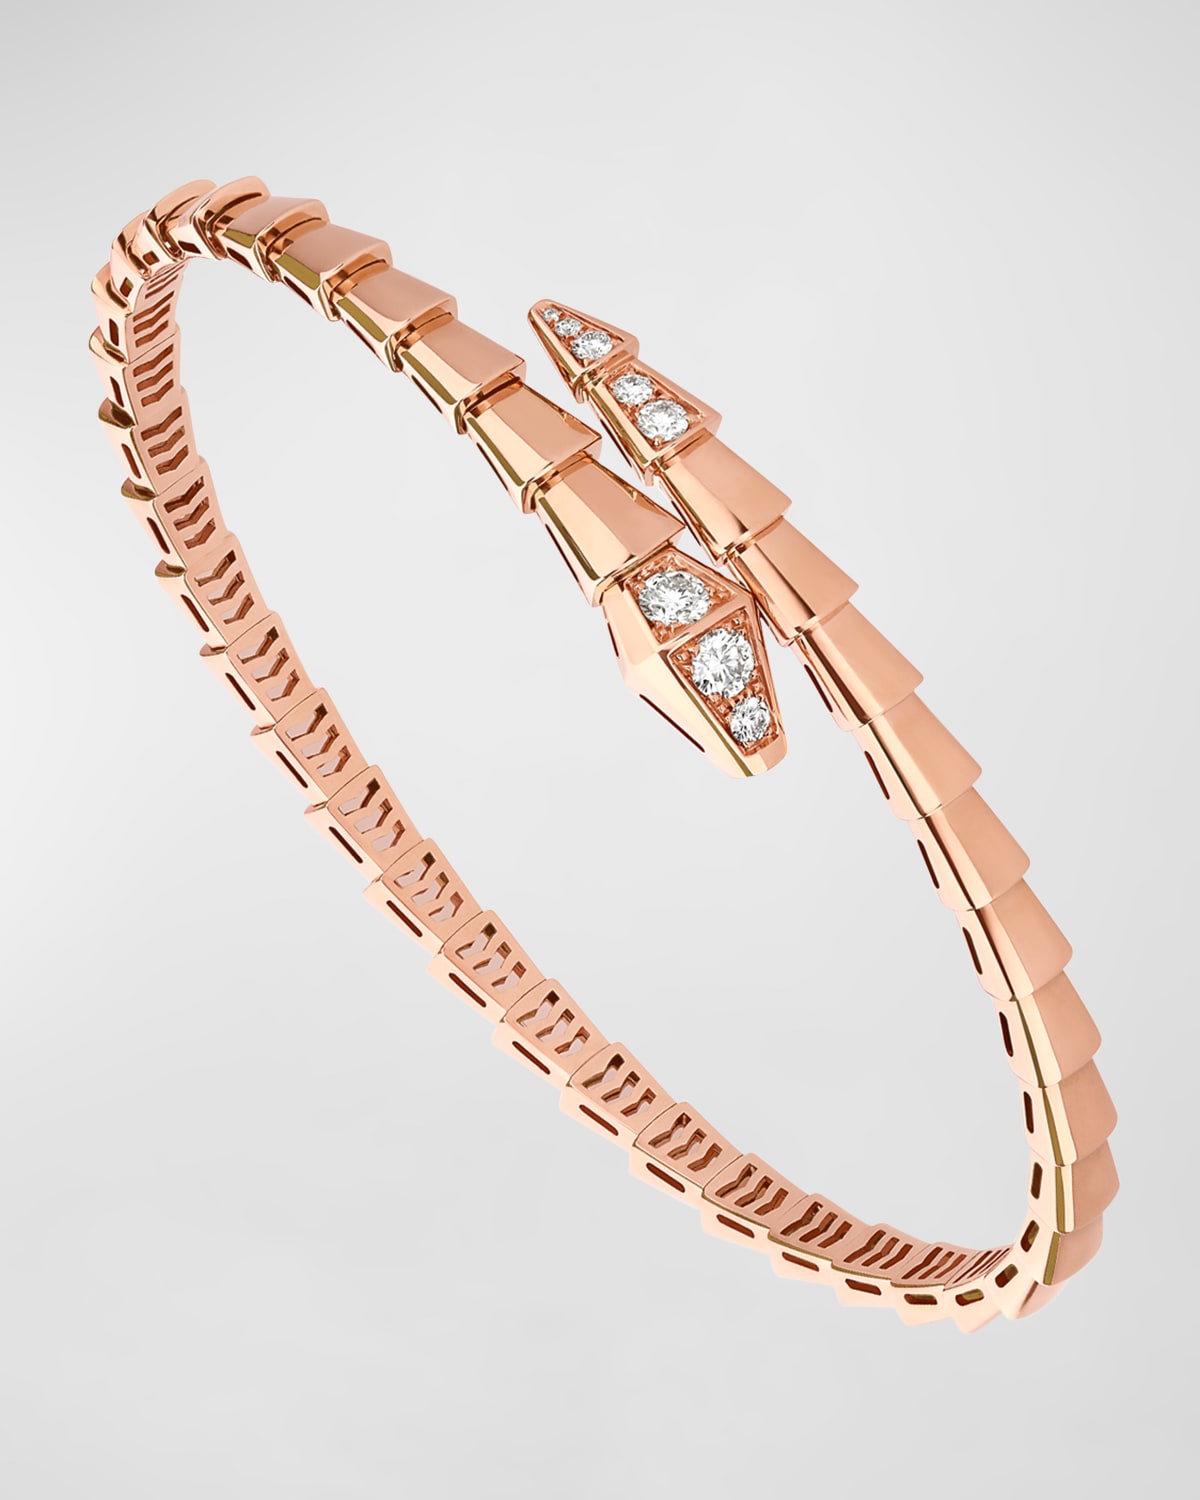 Serpenti Viper Bracelet in 18k Rose Gold and Diamonds, Size M